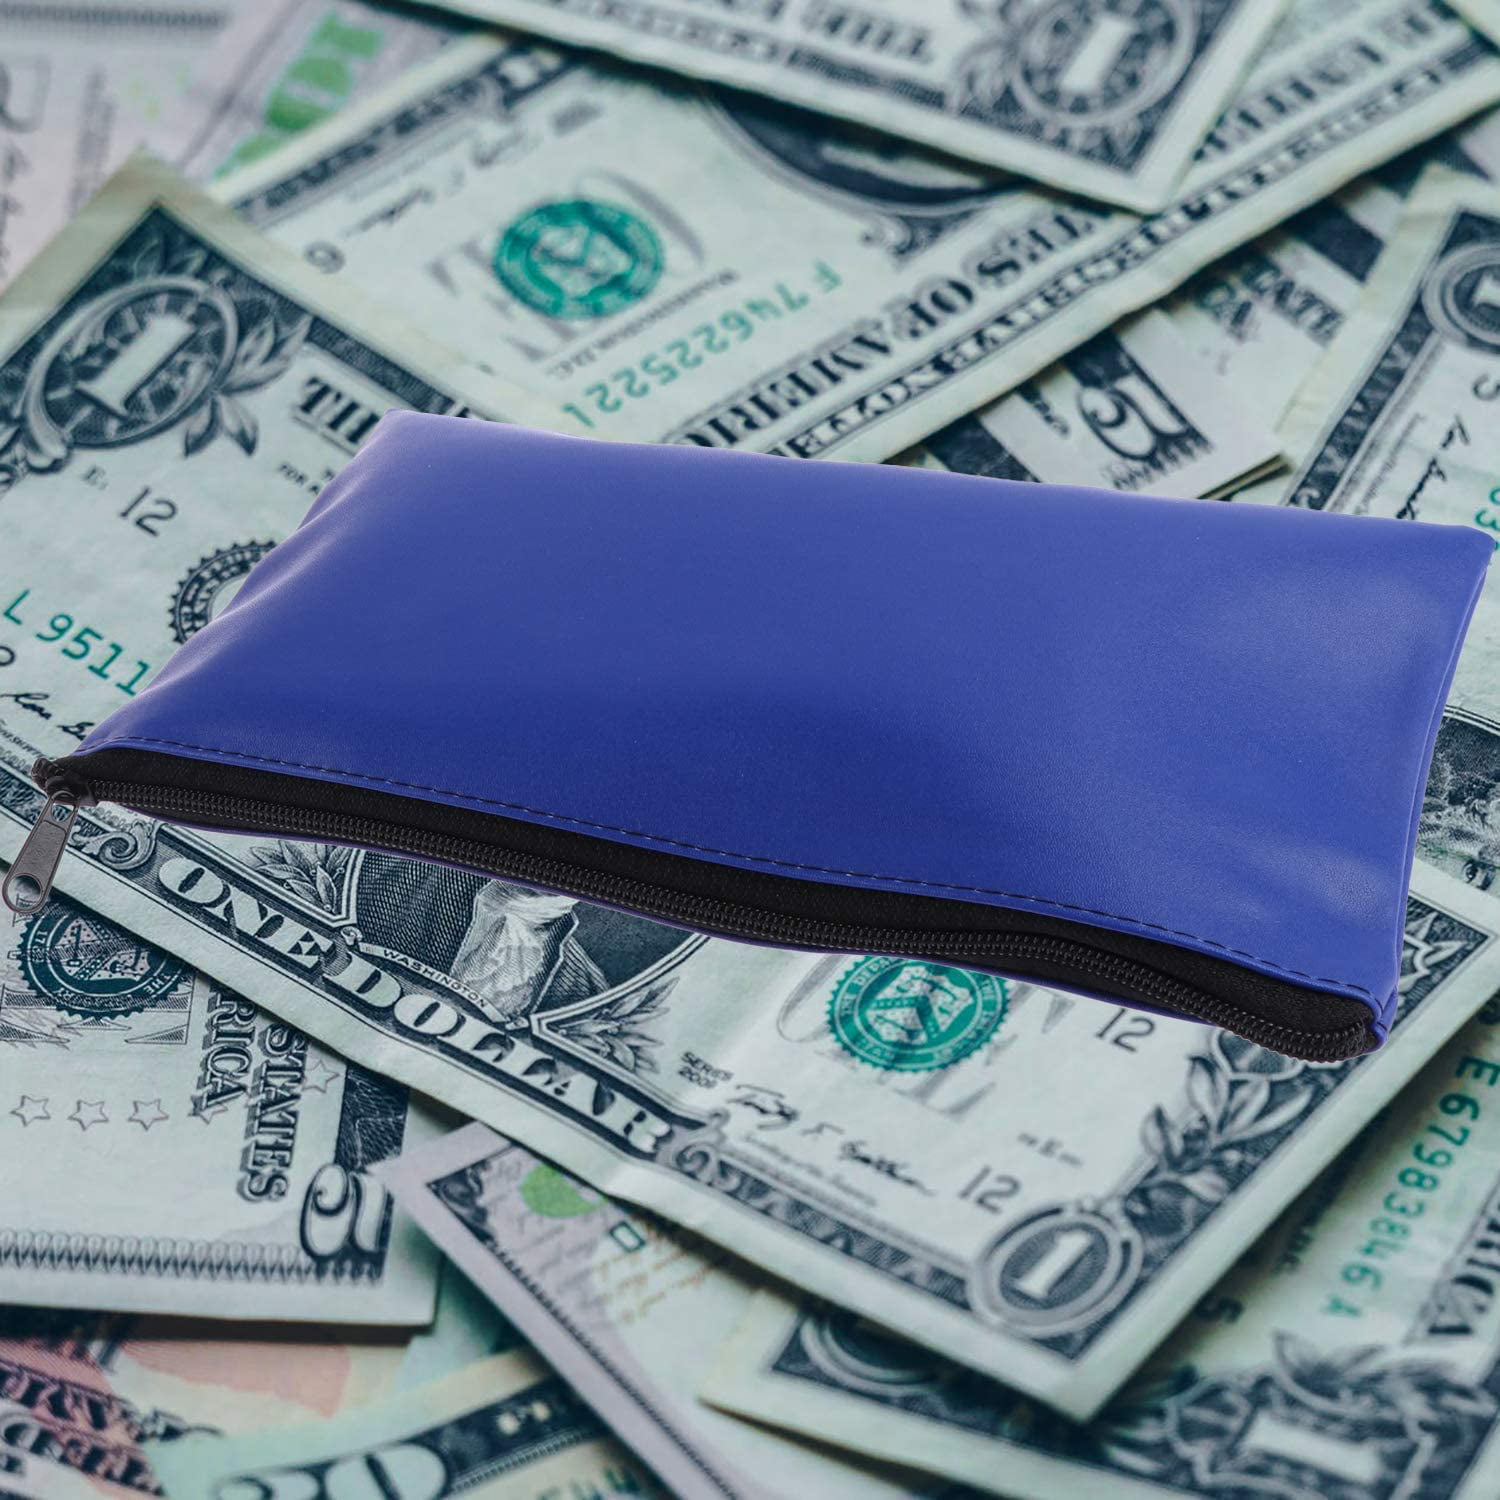 8 Pieces Bank Deposit Money Bag Leatherette Securit Vinyl Blue Zipper Pouches Wallet Utility Zipper Coin Bags for Cash Money,11x6in 